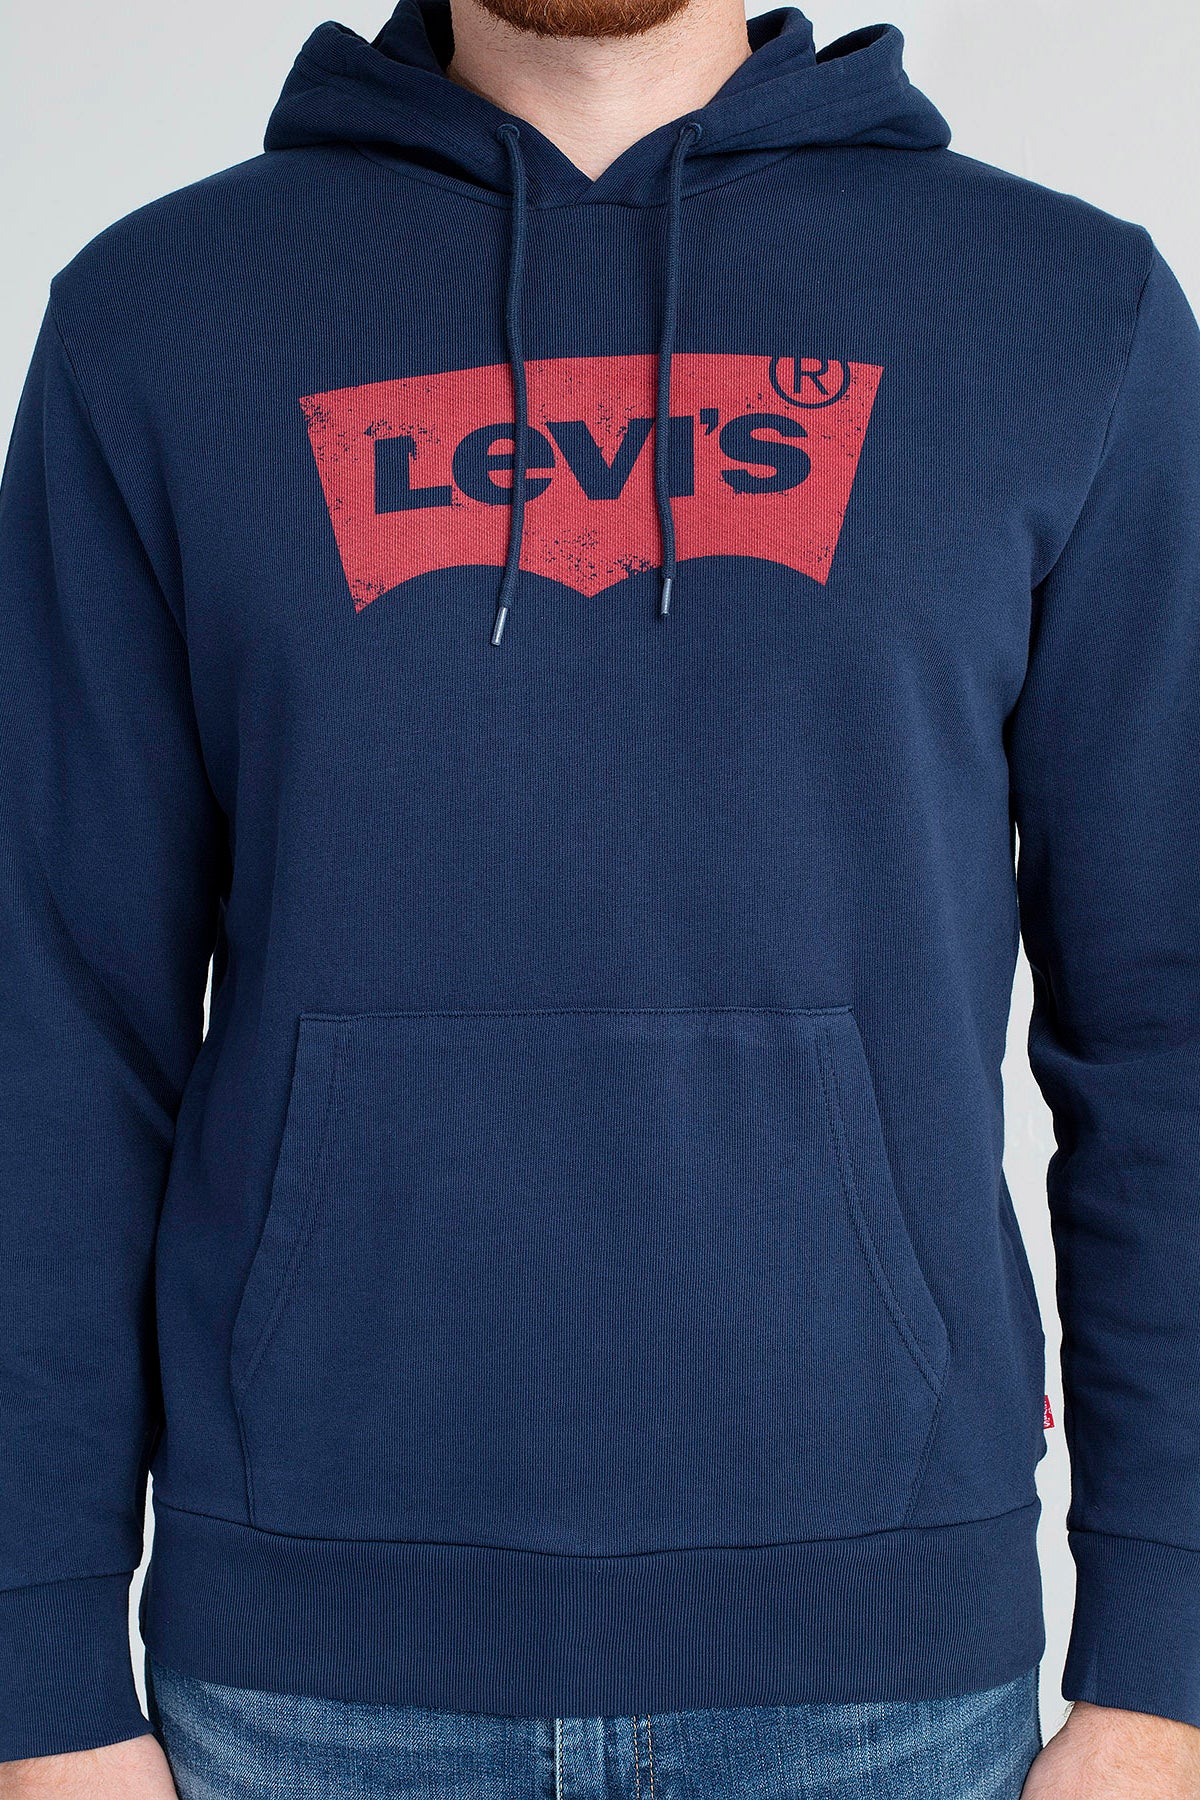 Levi's Logo Baskılı Kapüşonlu % 100 Pamuk Erkek Sweat 19622-0007 LACİVERT